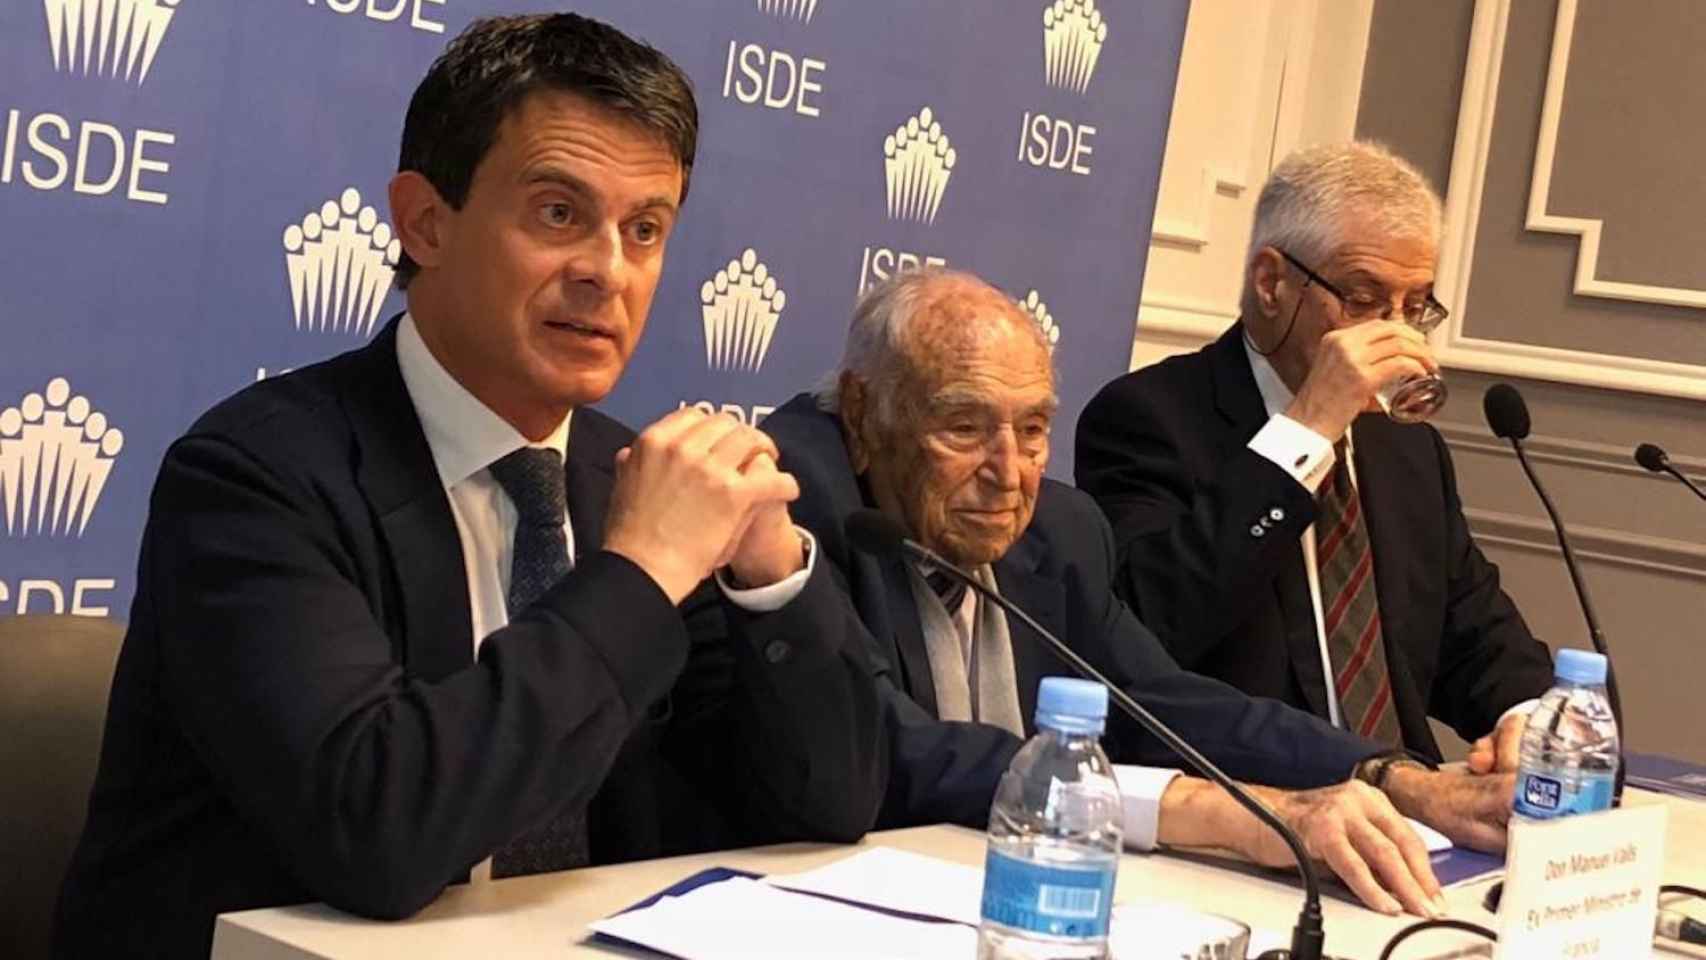 Manuel Valls durante su conferencia en el ISDE